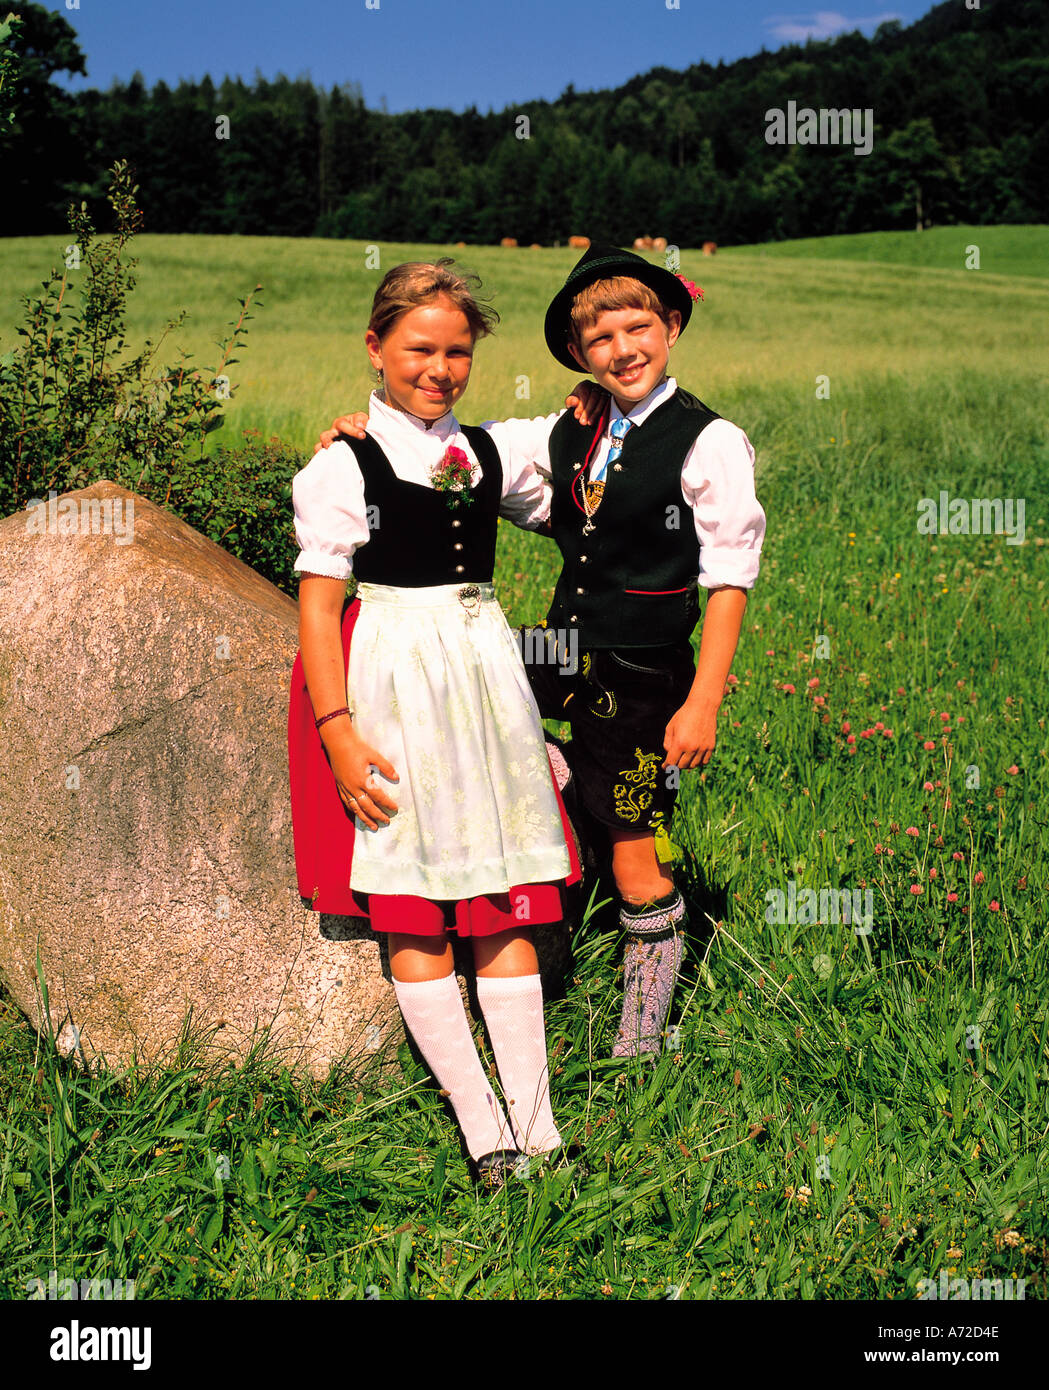 Les enfants en costumes traditionnels bavarois en Allemagne Banque D'Images